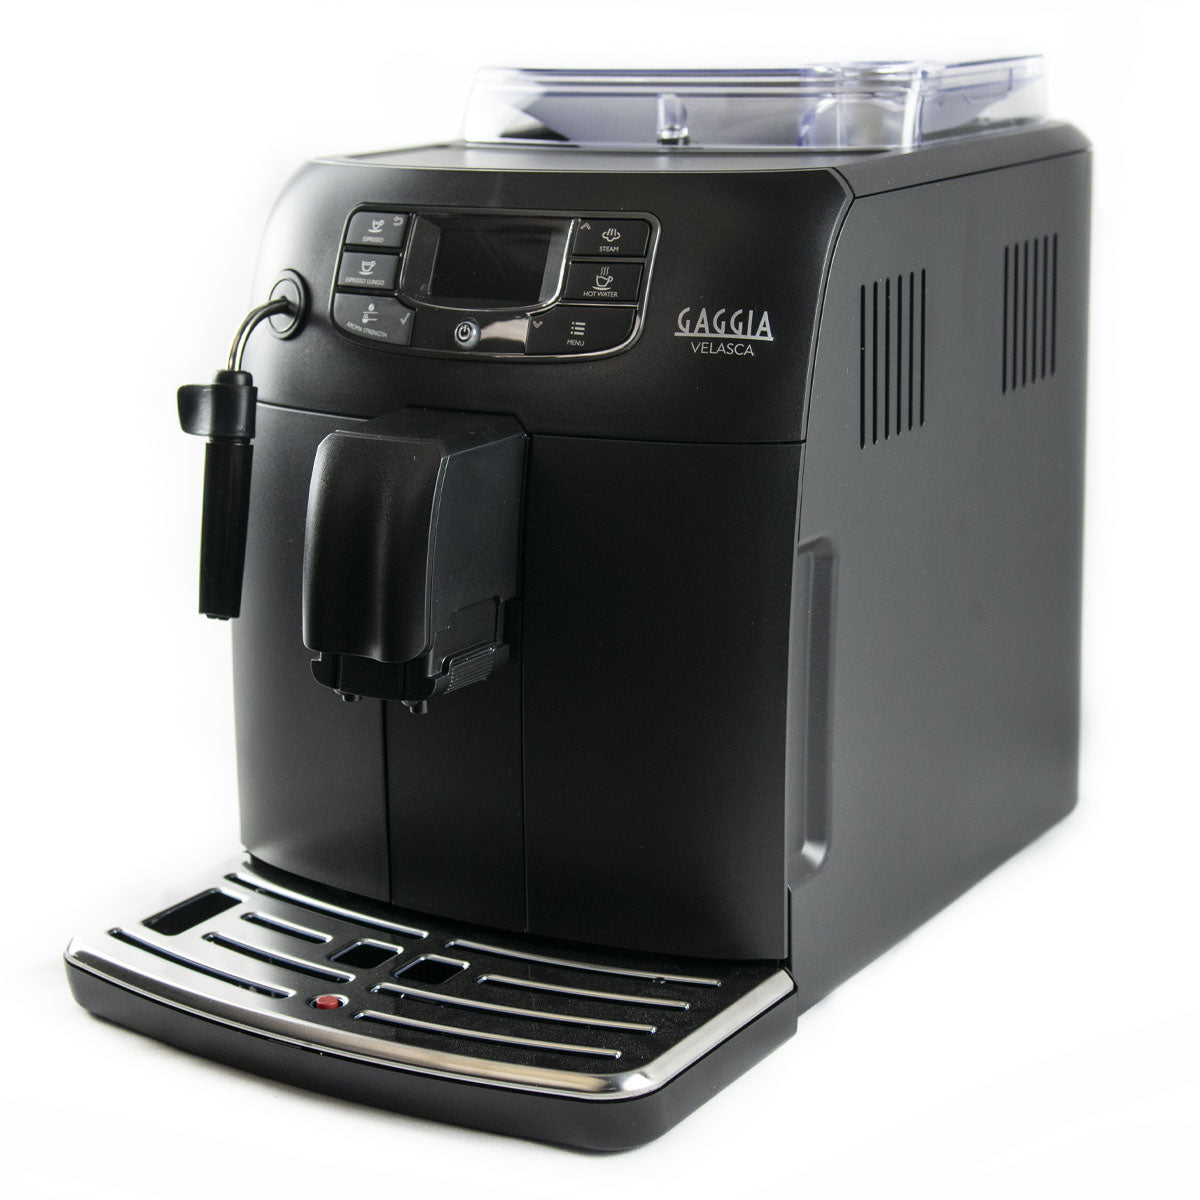 gaggia velasca black - super automatic espresso machine - Italian coffee machine